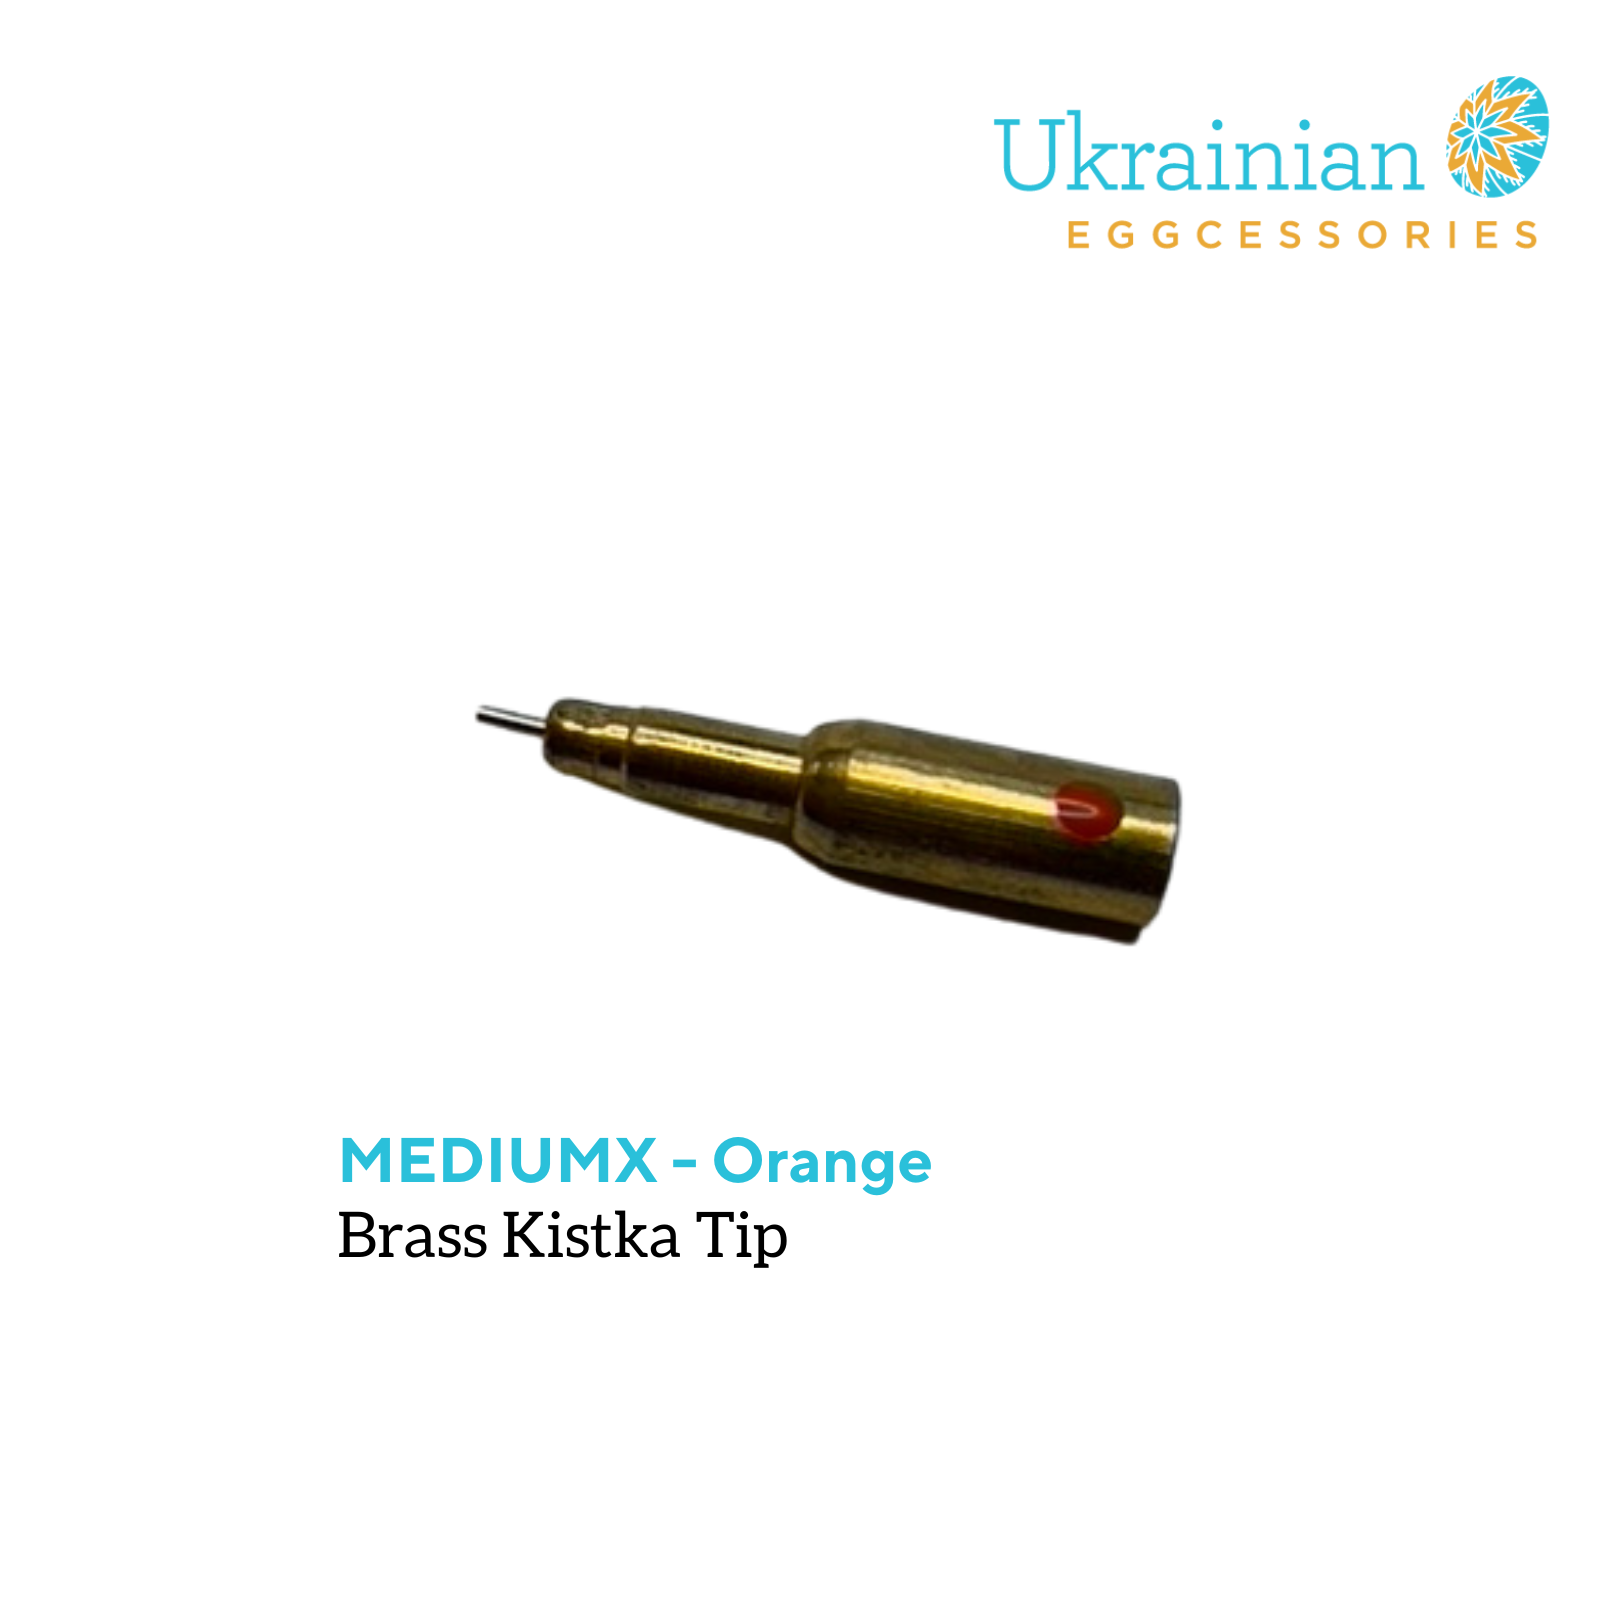 Brass Kistka Tip - #5 MediumX Tip